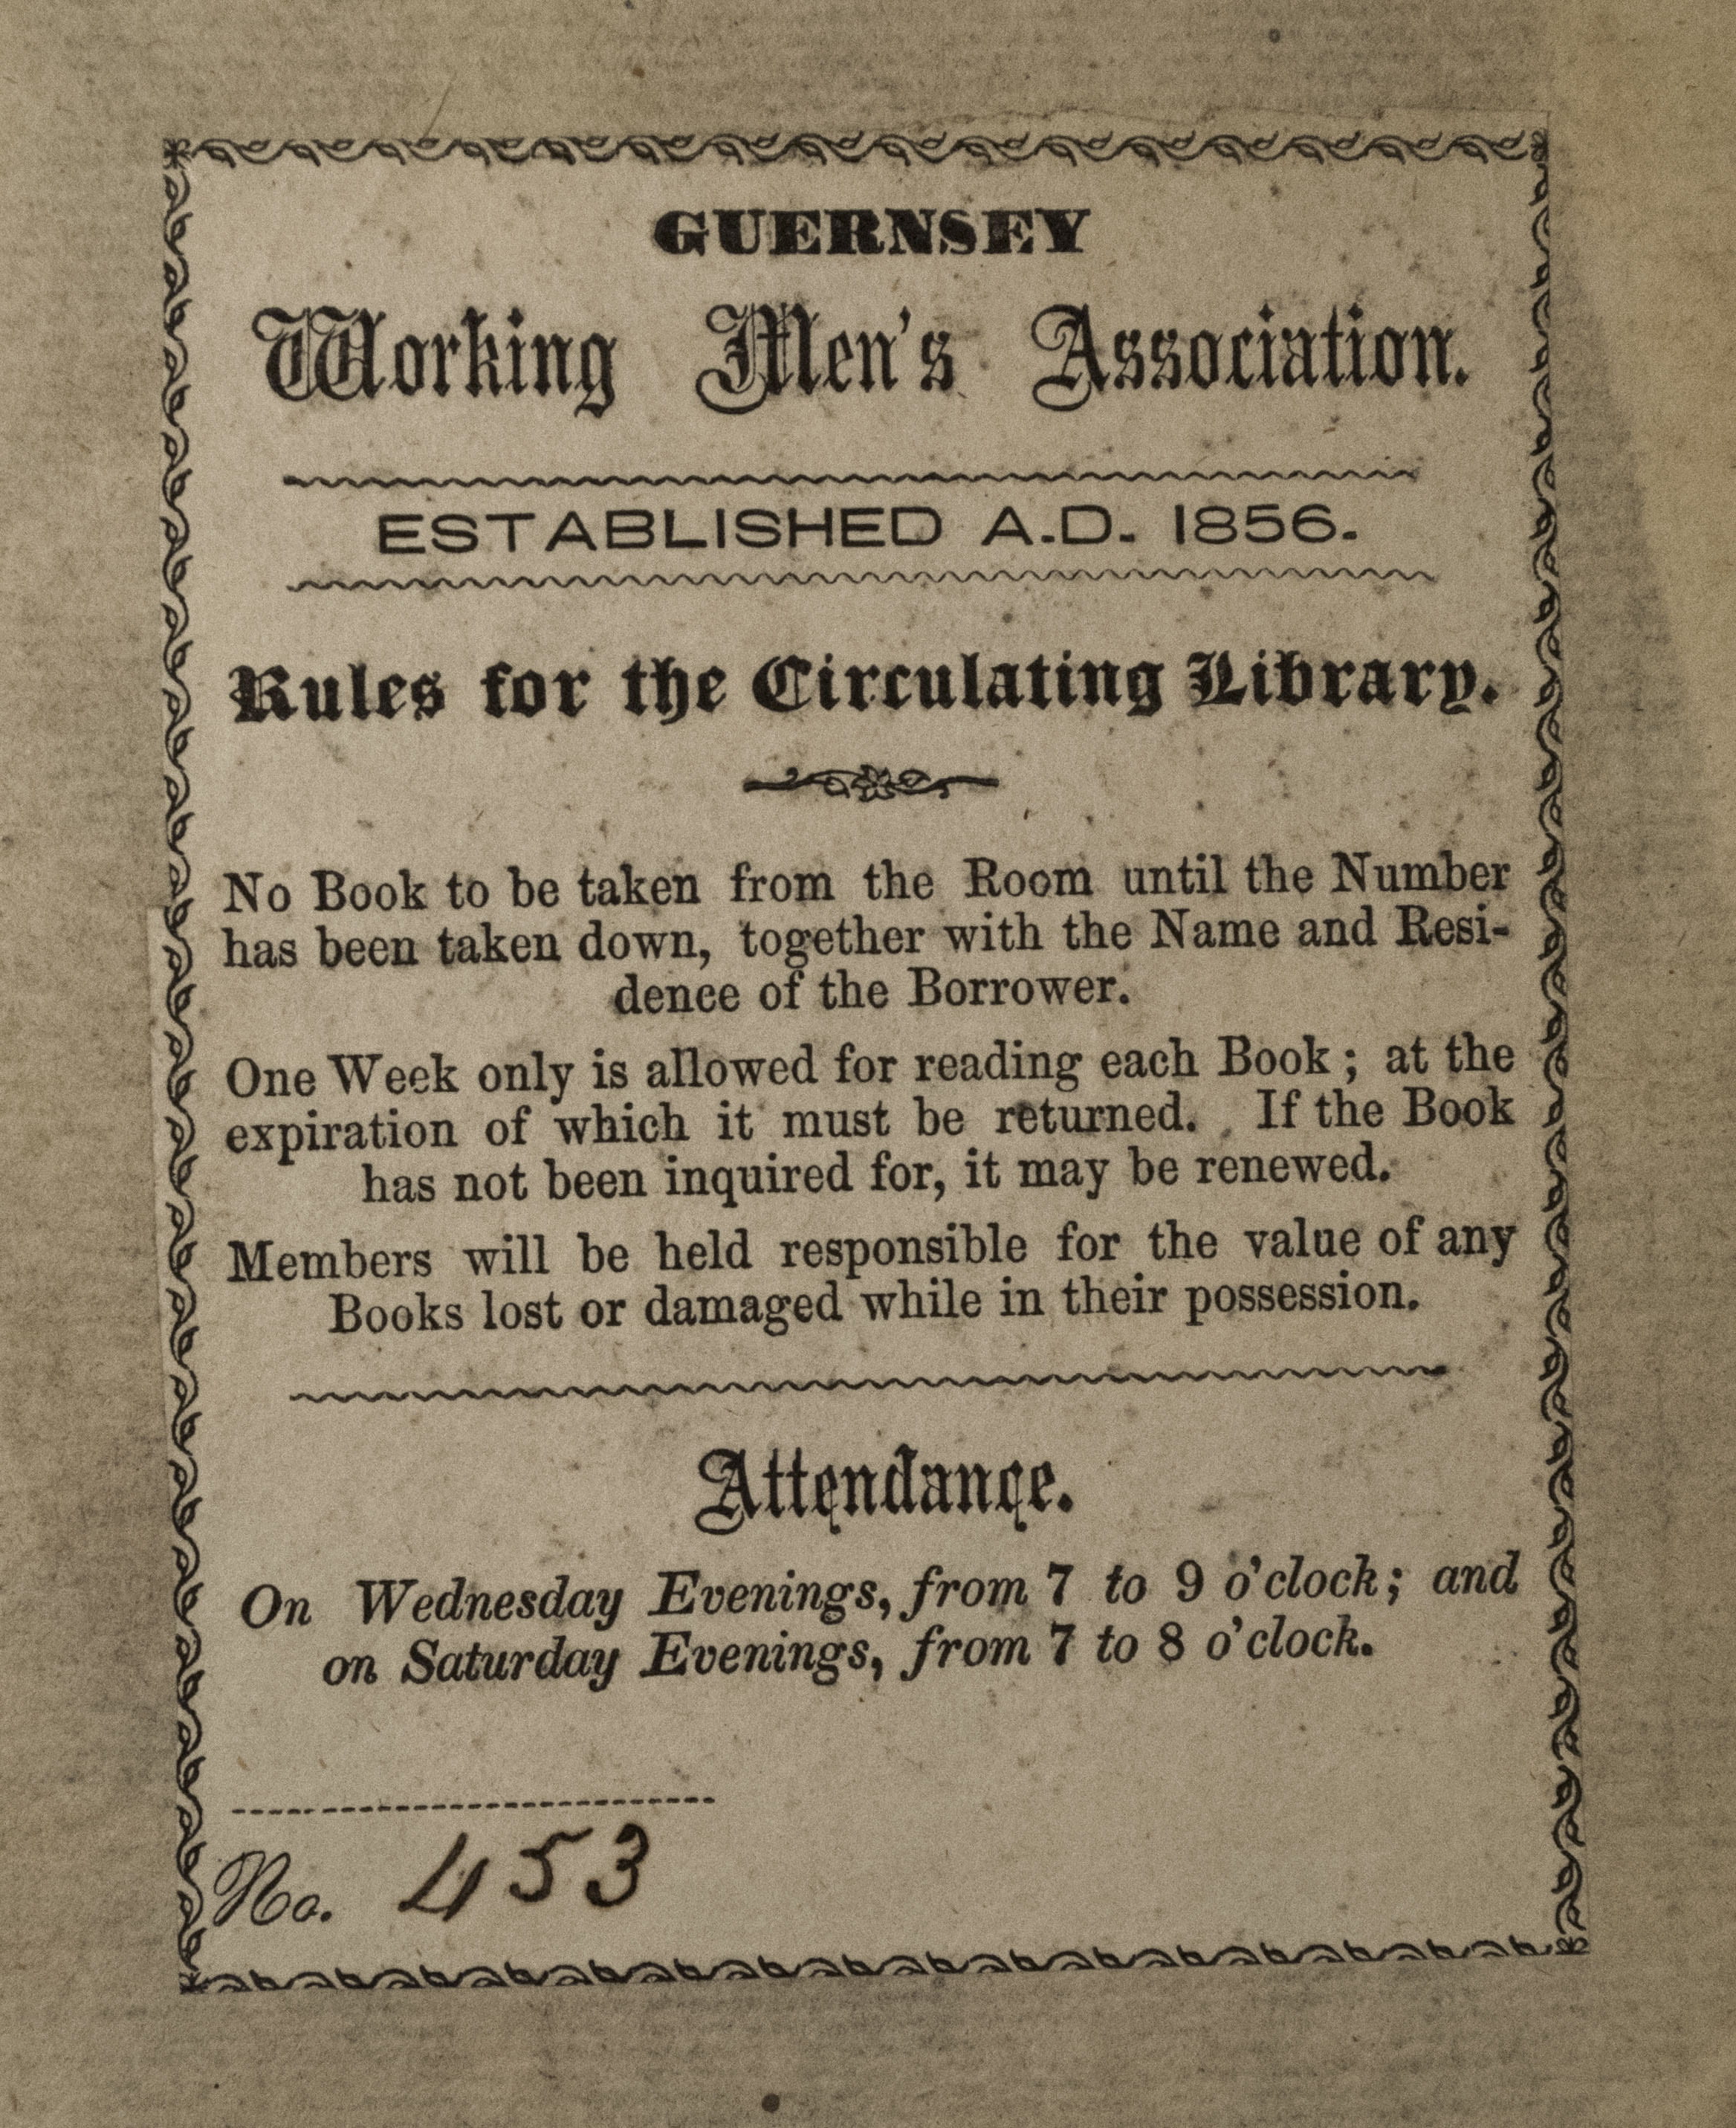 Guernsey Working Men's Association